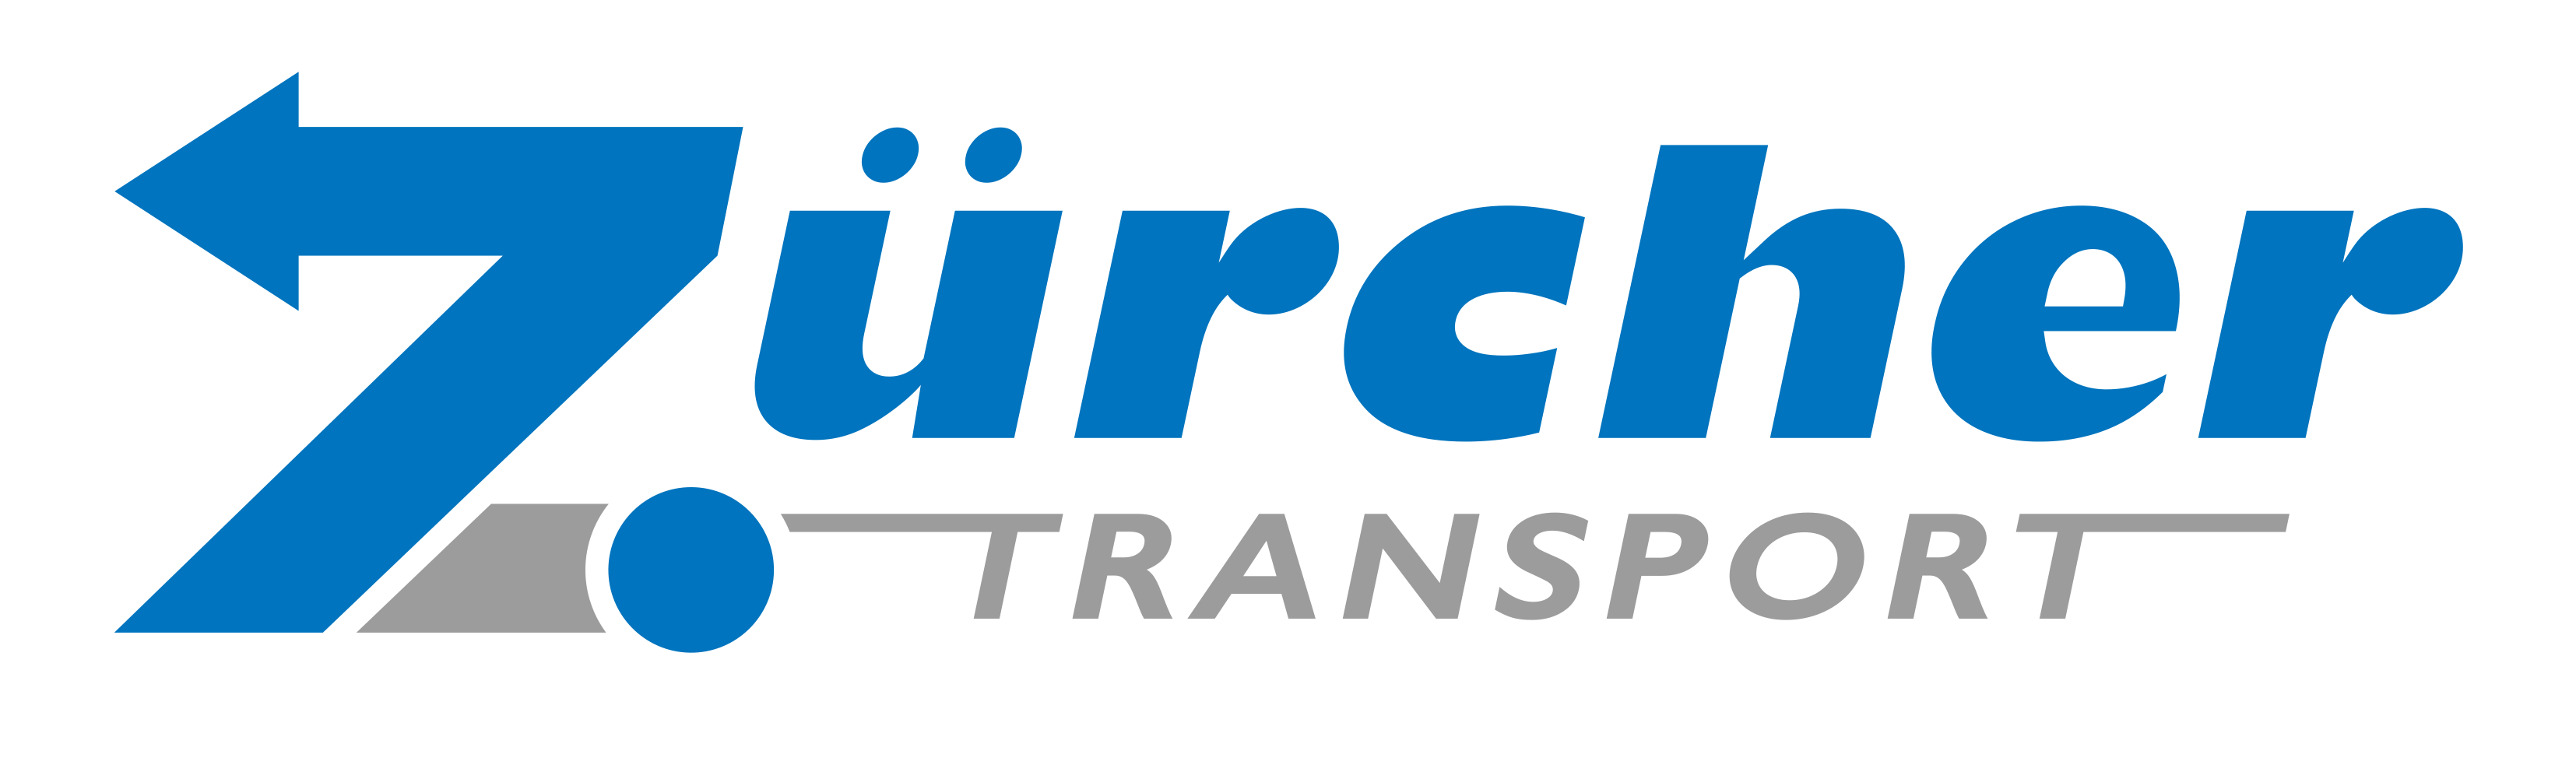 Zürcher Transport AG